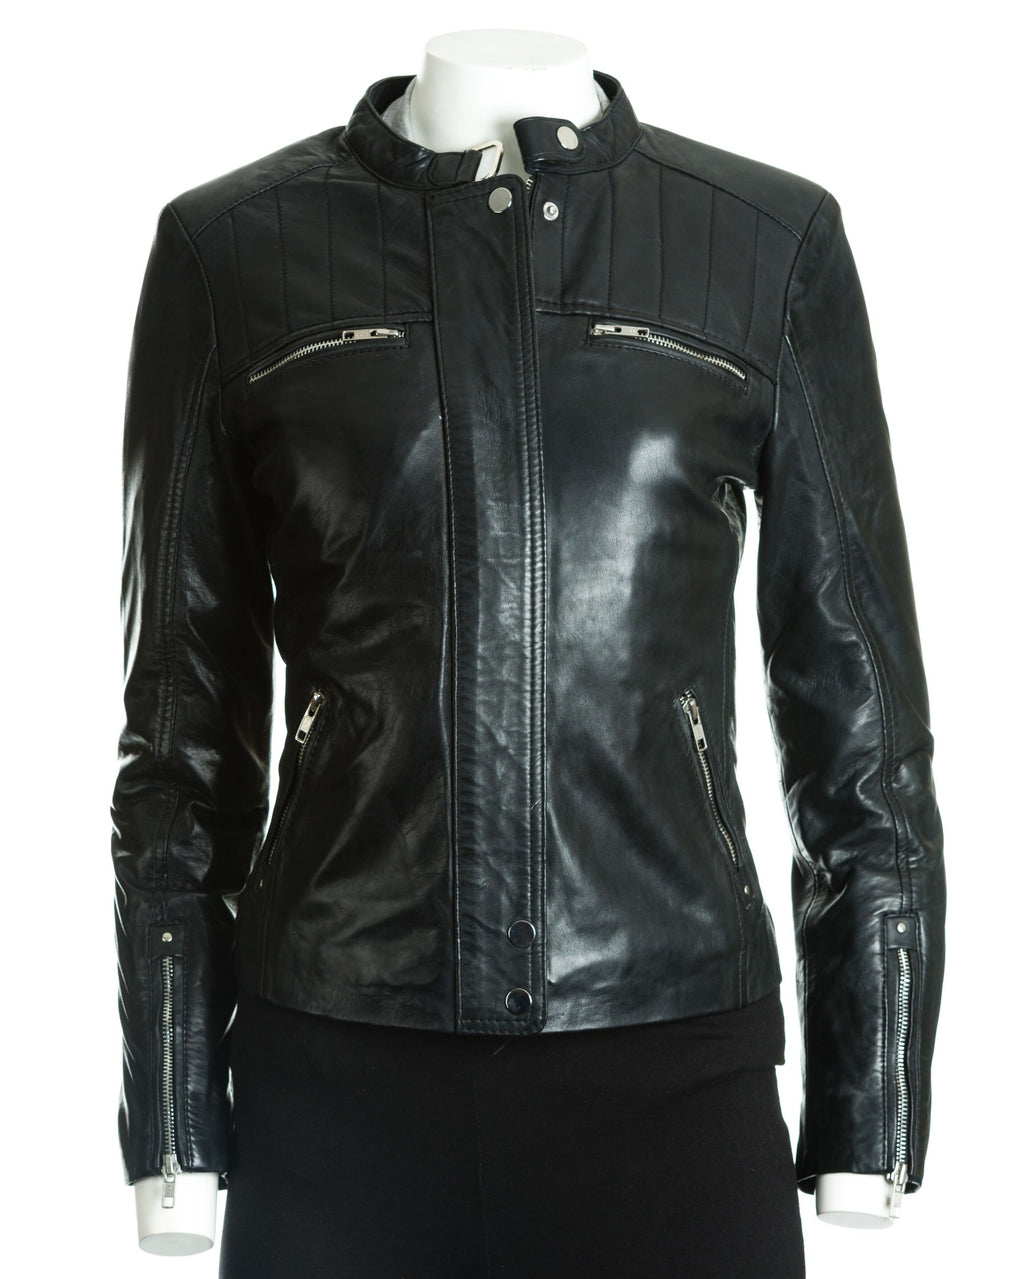 Women's Leather Biker Jacket with Stitch Detail: Zeta